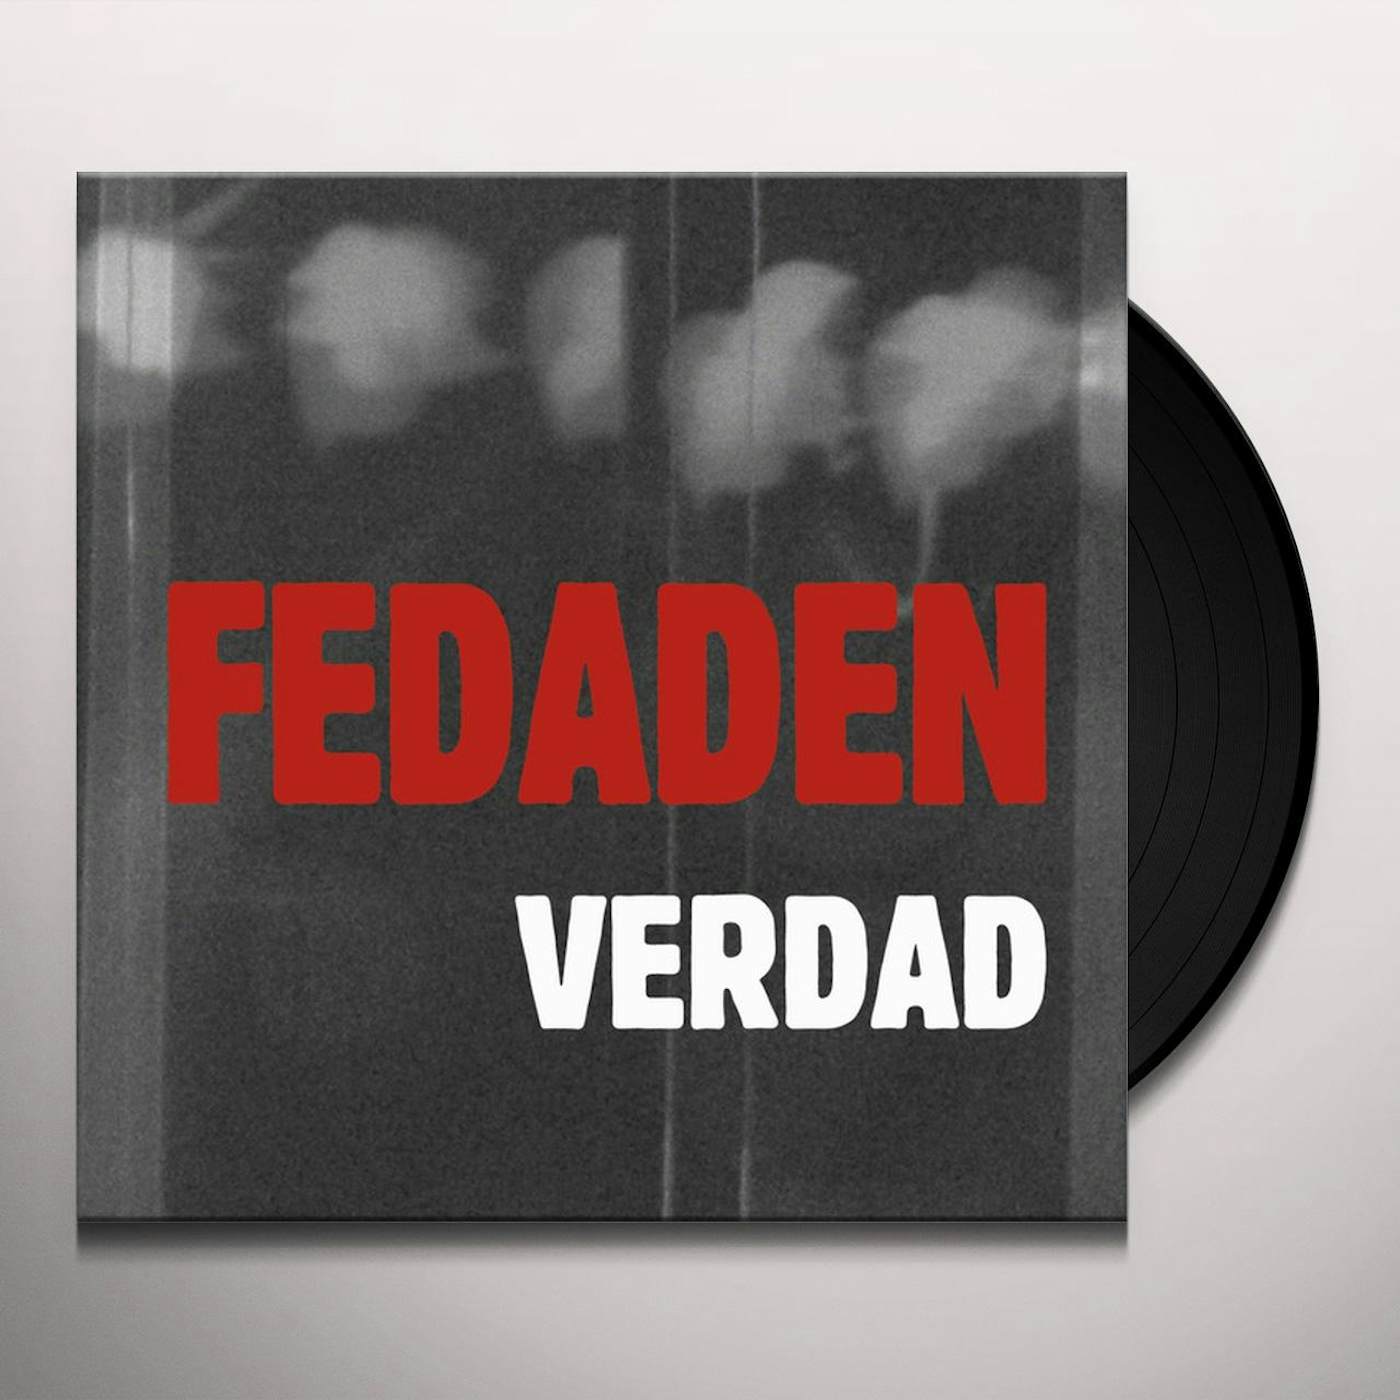 Fedaden Verdad Vinyl Record